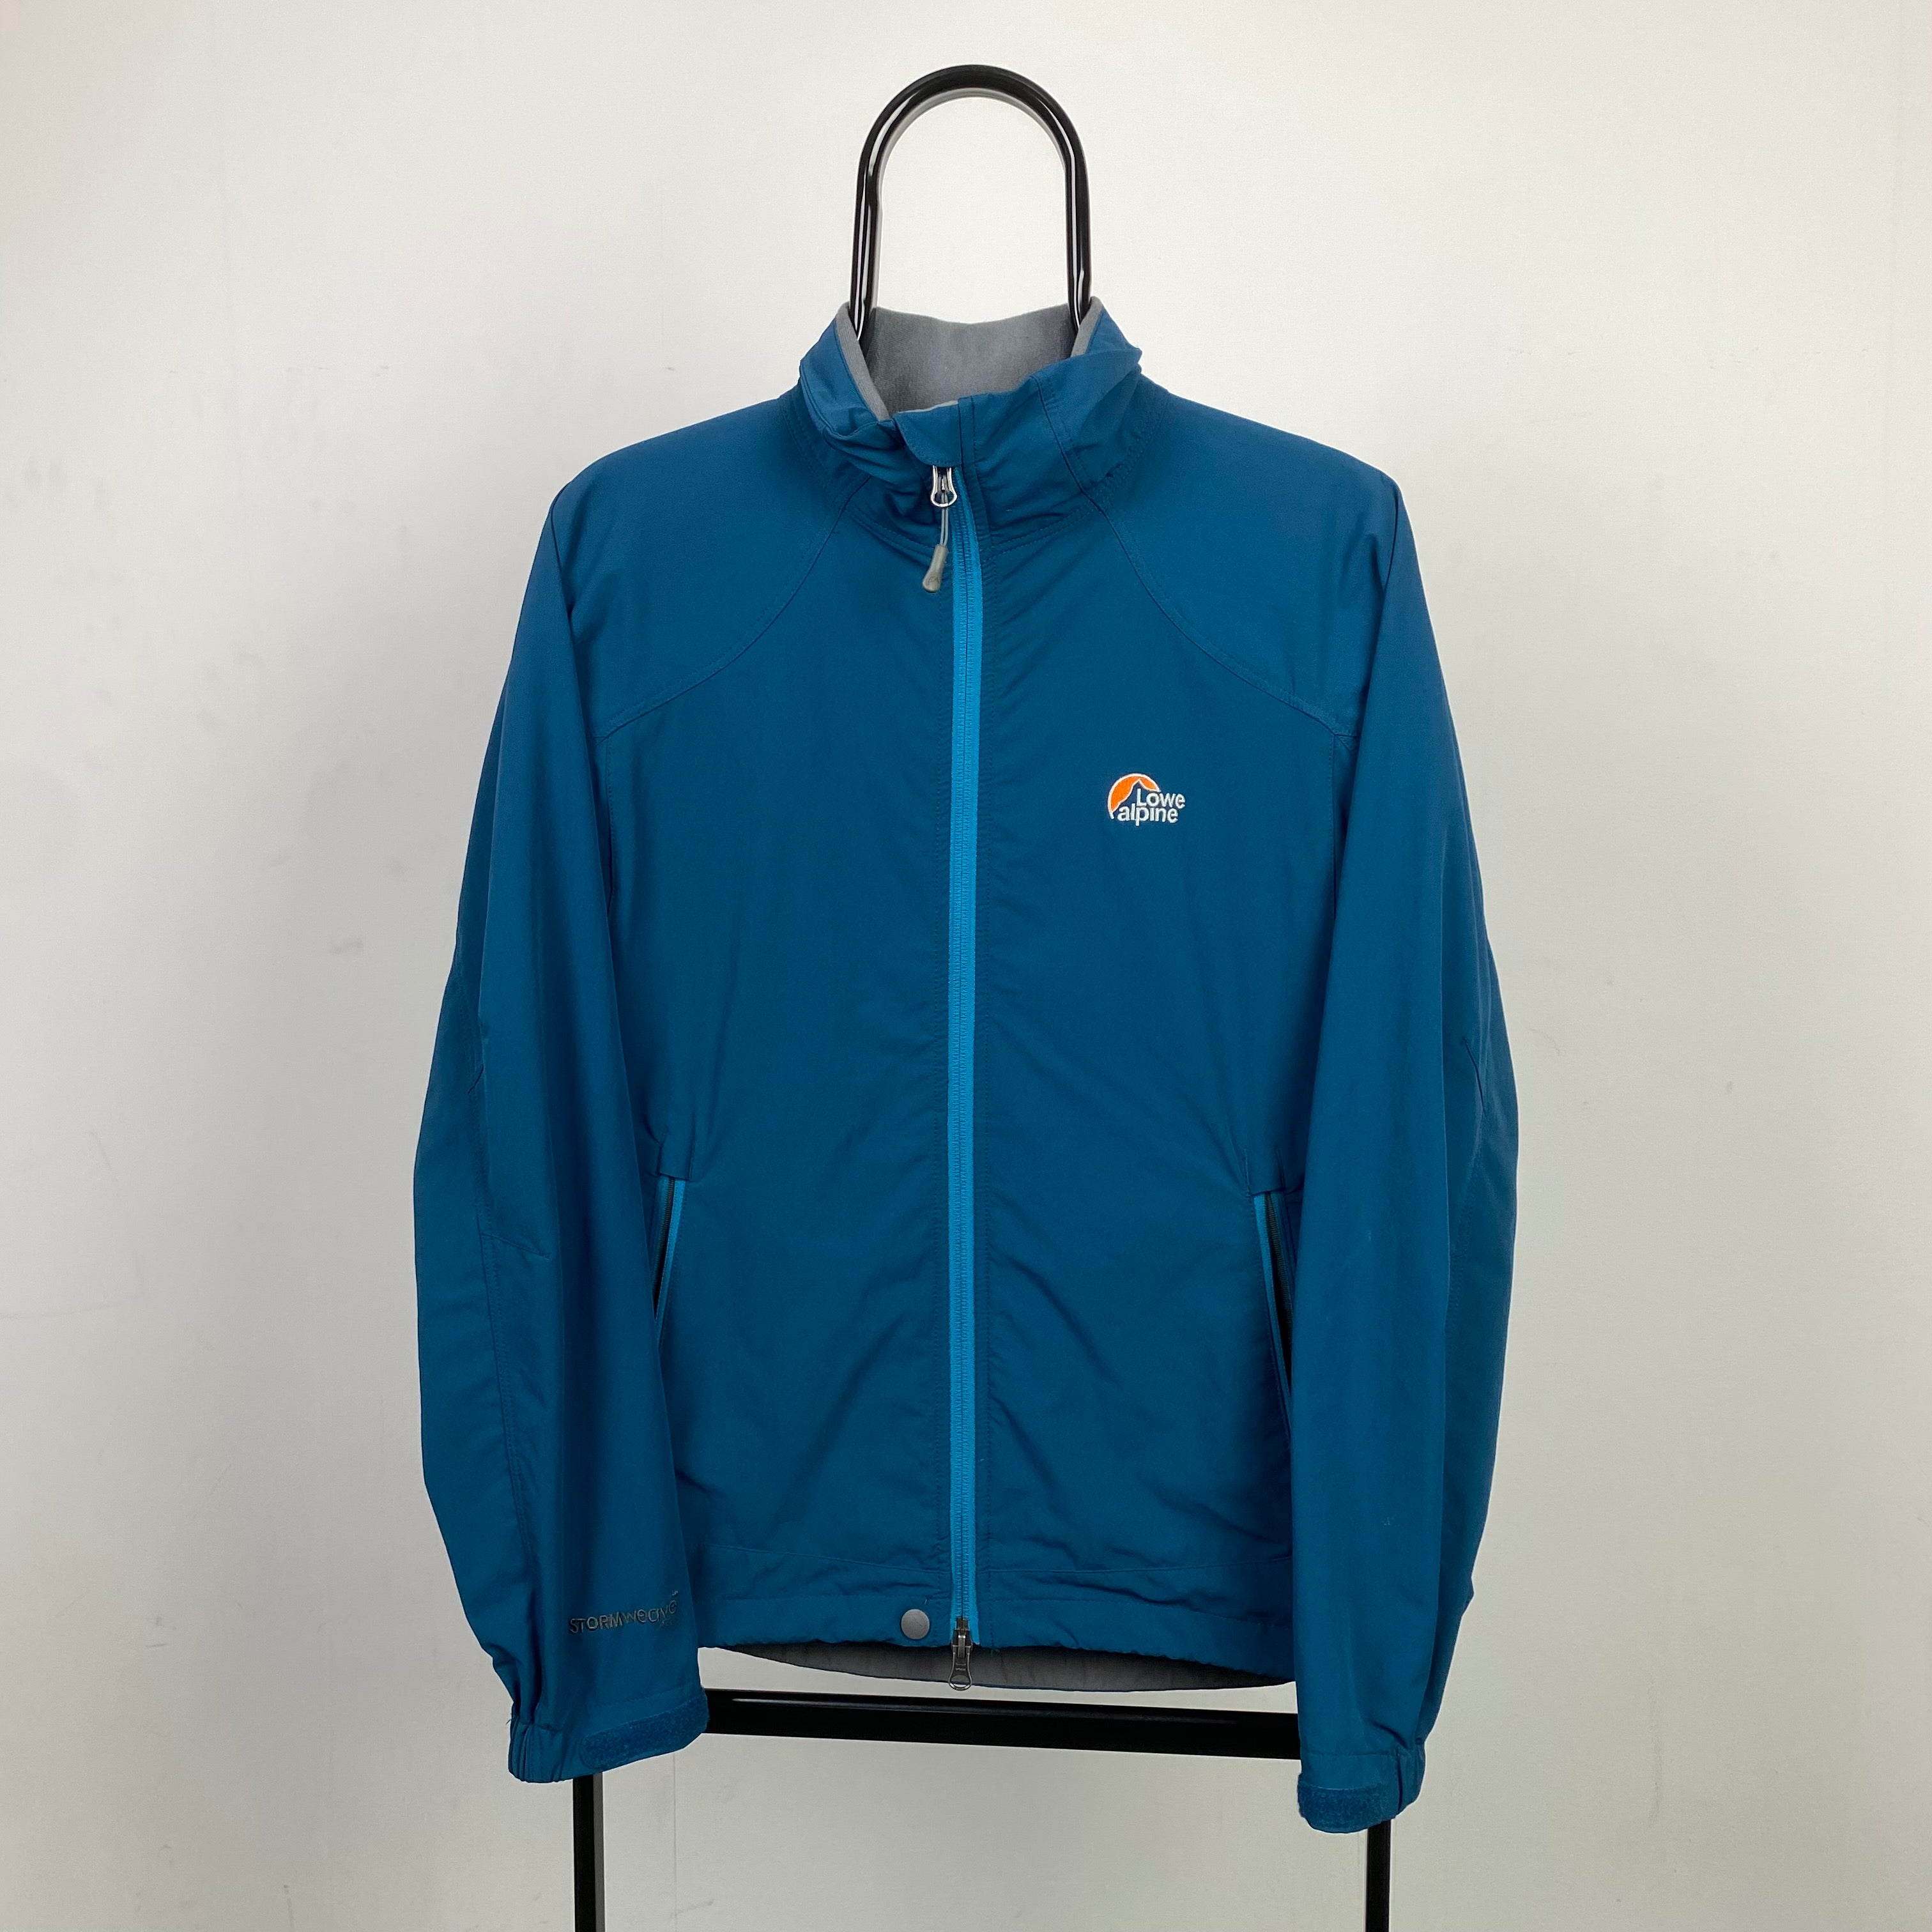 Retro Lowe Alpine Waterproof Coat Jacket Blue Small